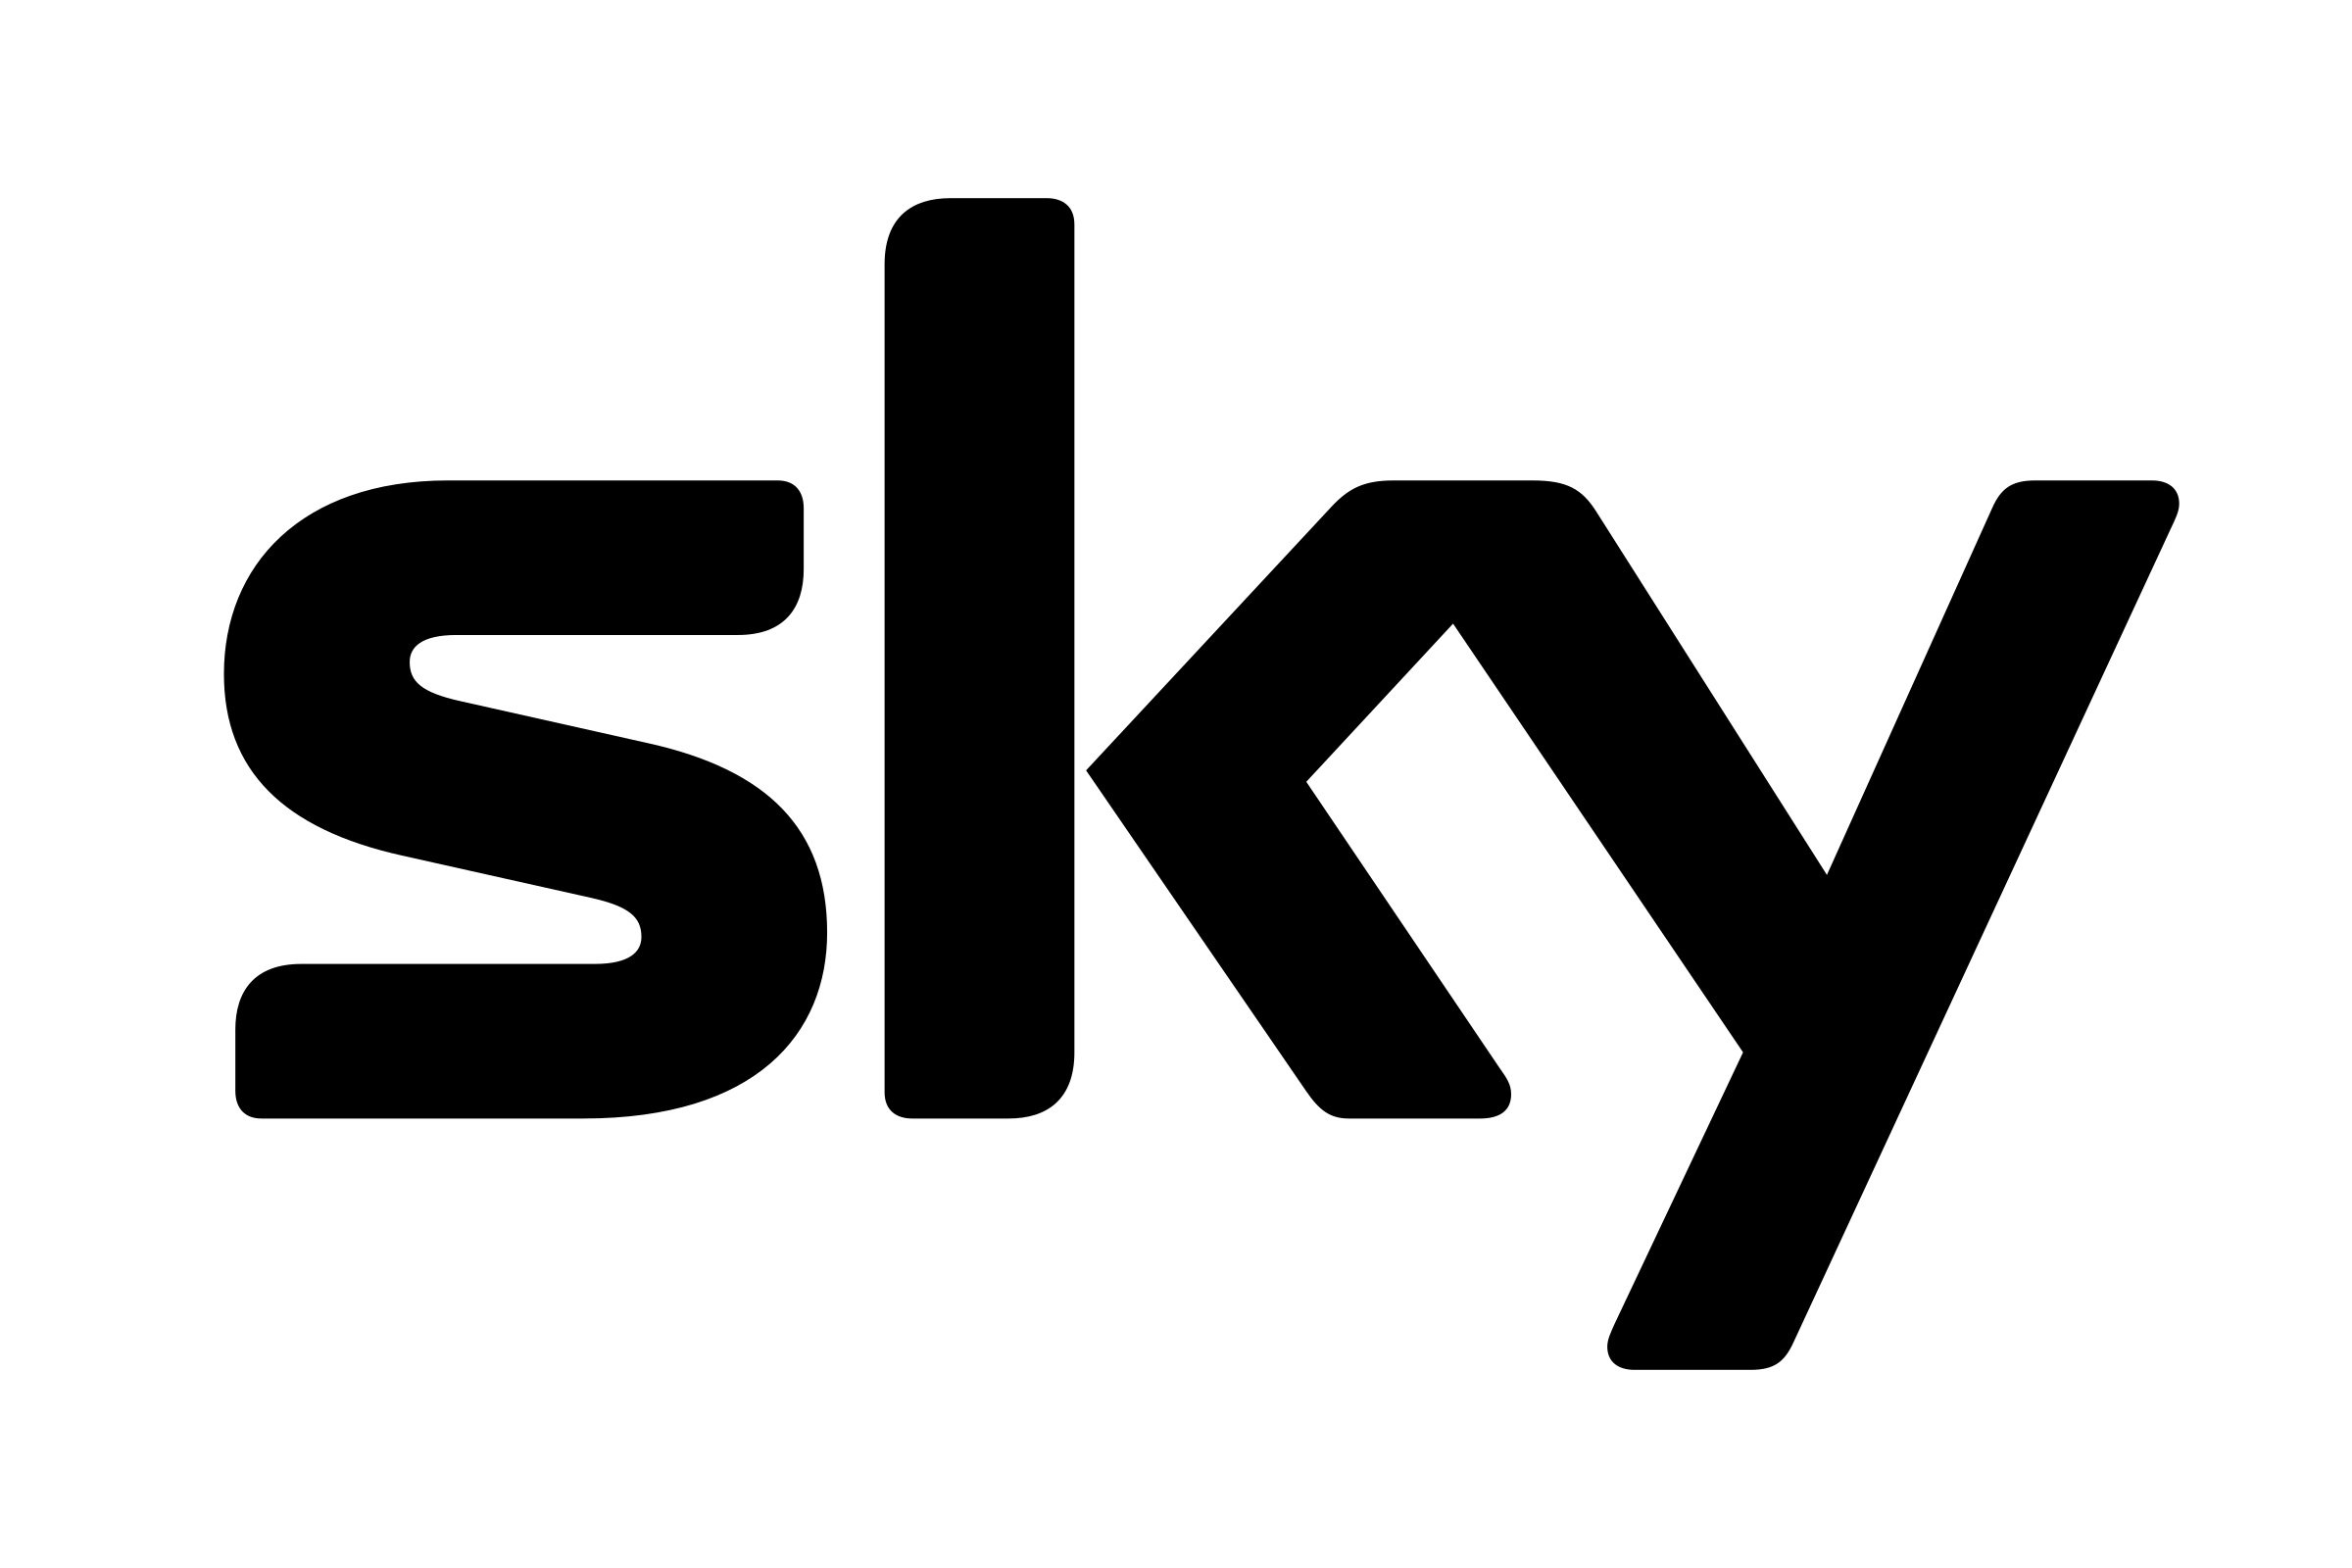 sky-1-logo-black-and-white.jpg